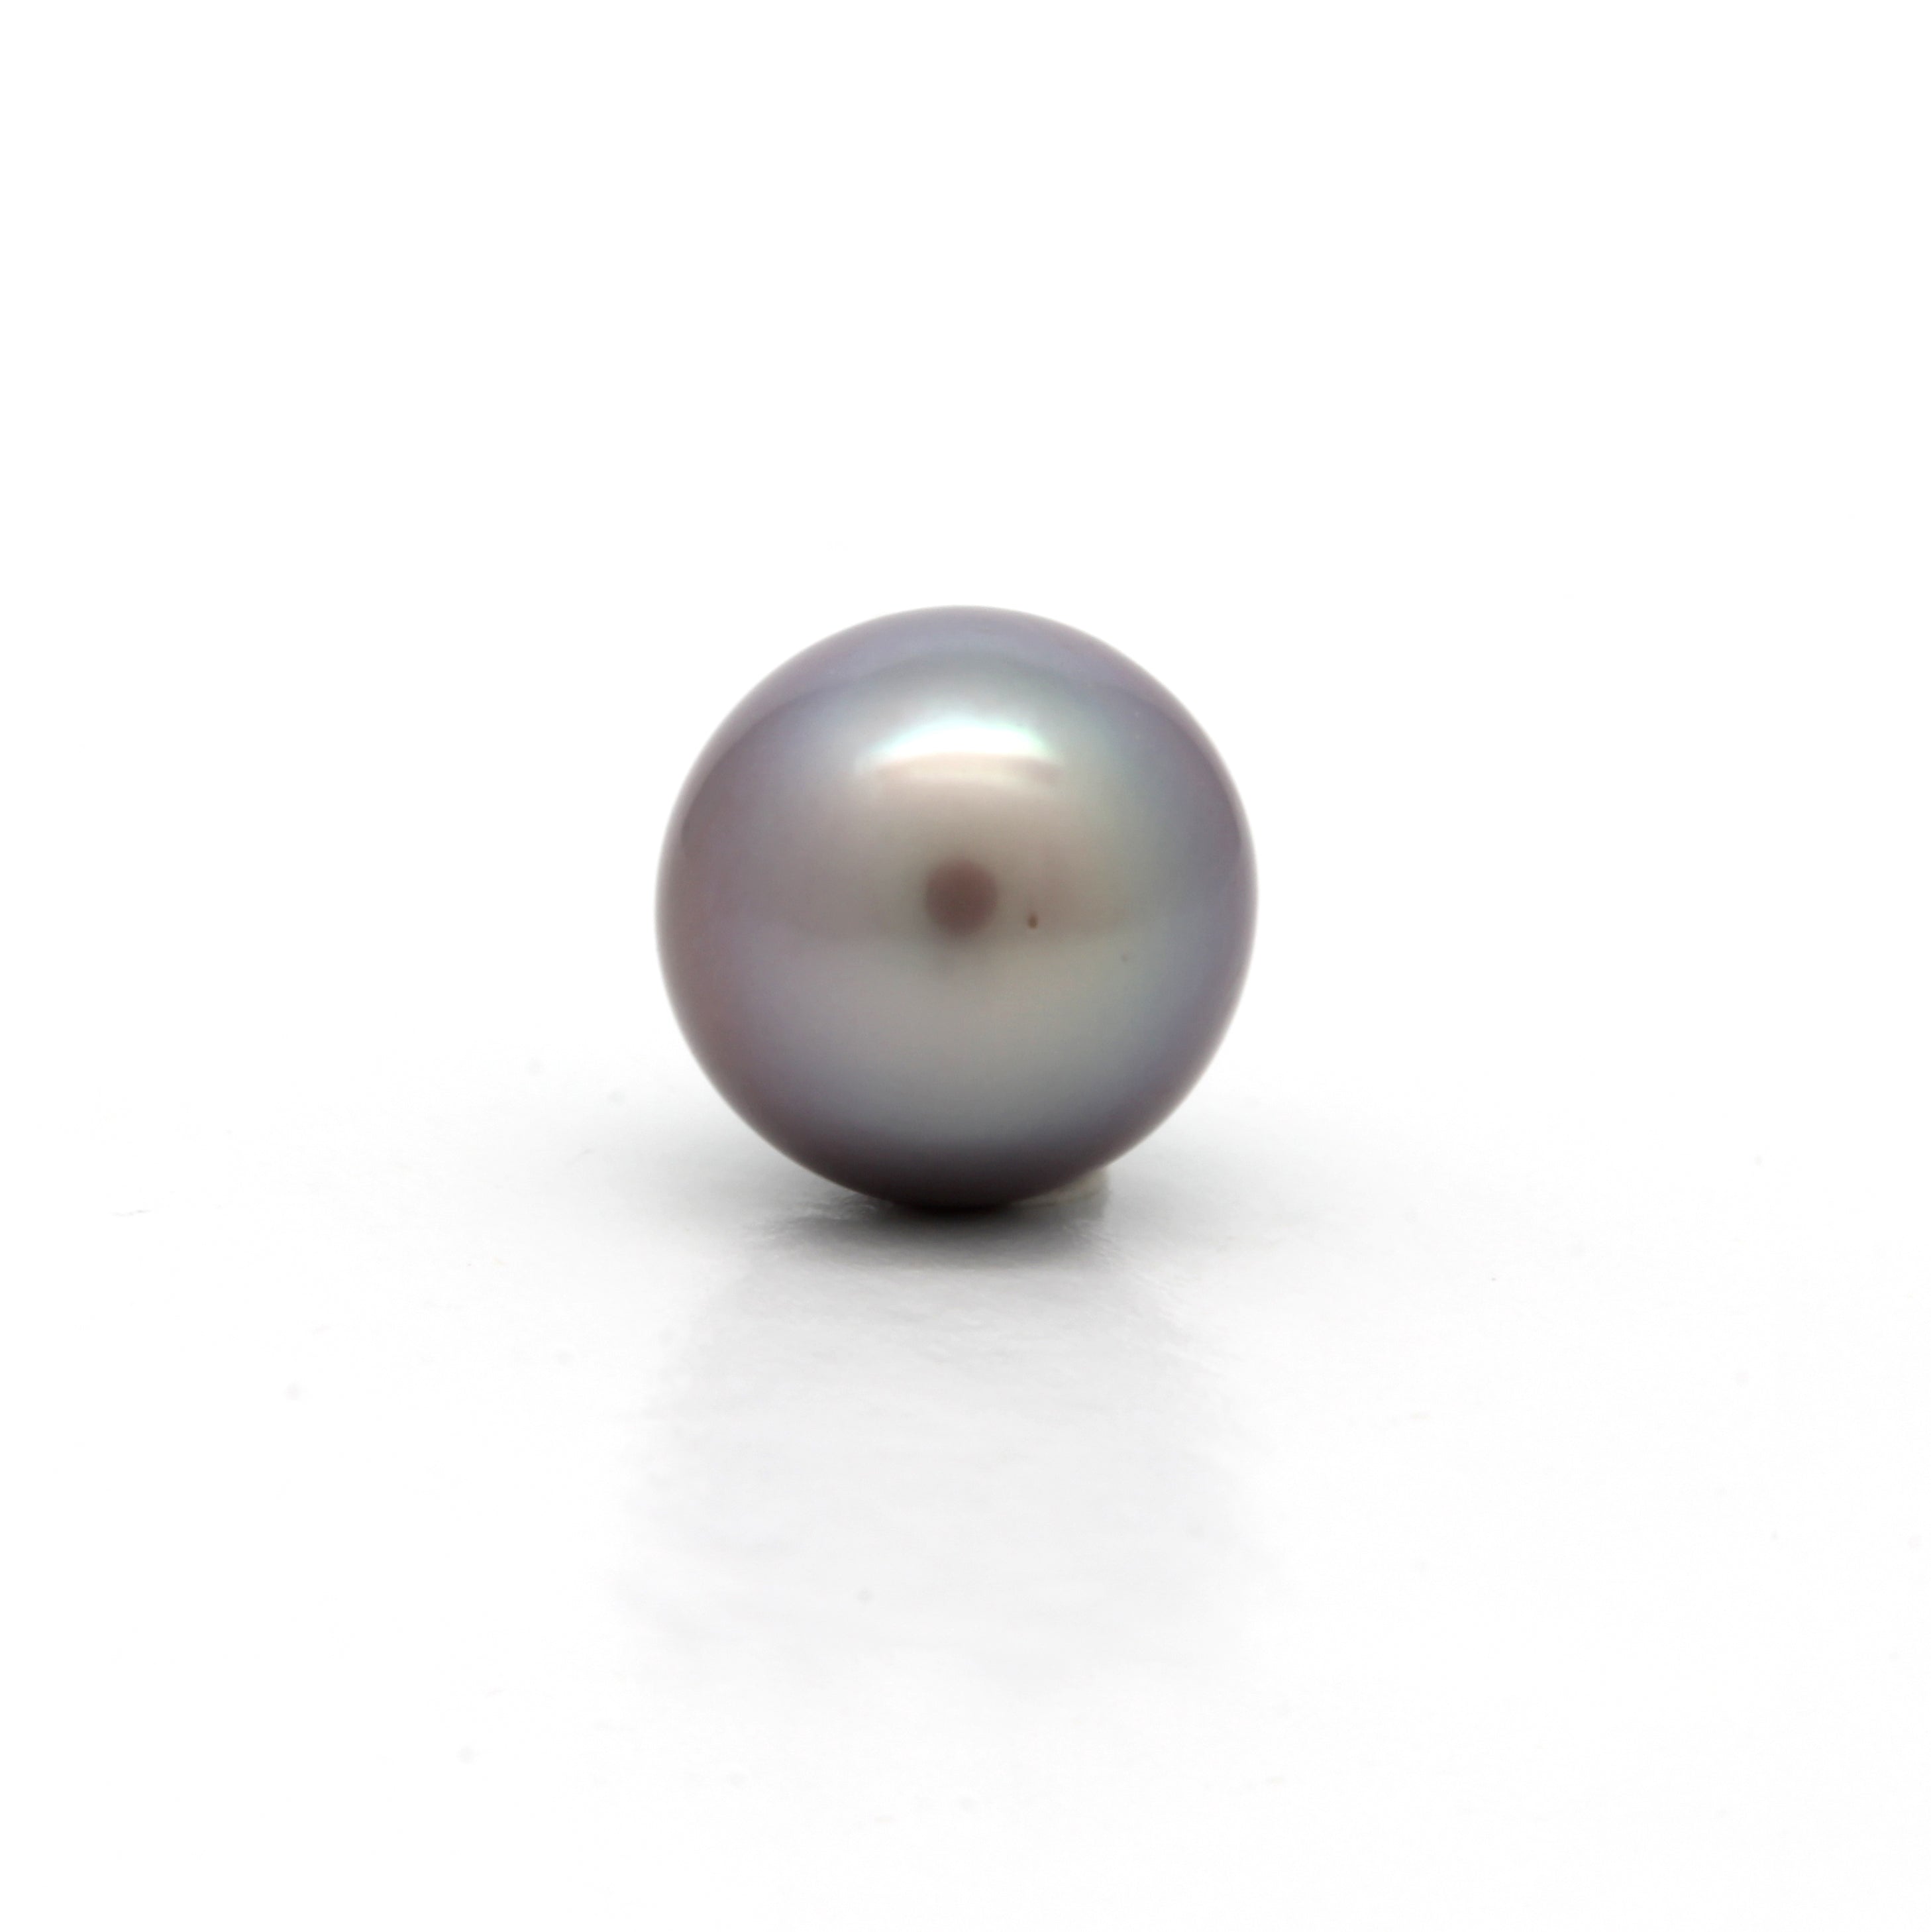 Semi-Baroque Cortez Pearl (8.5mm) Harvest 2019 (P-42)